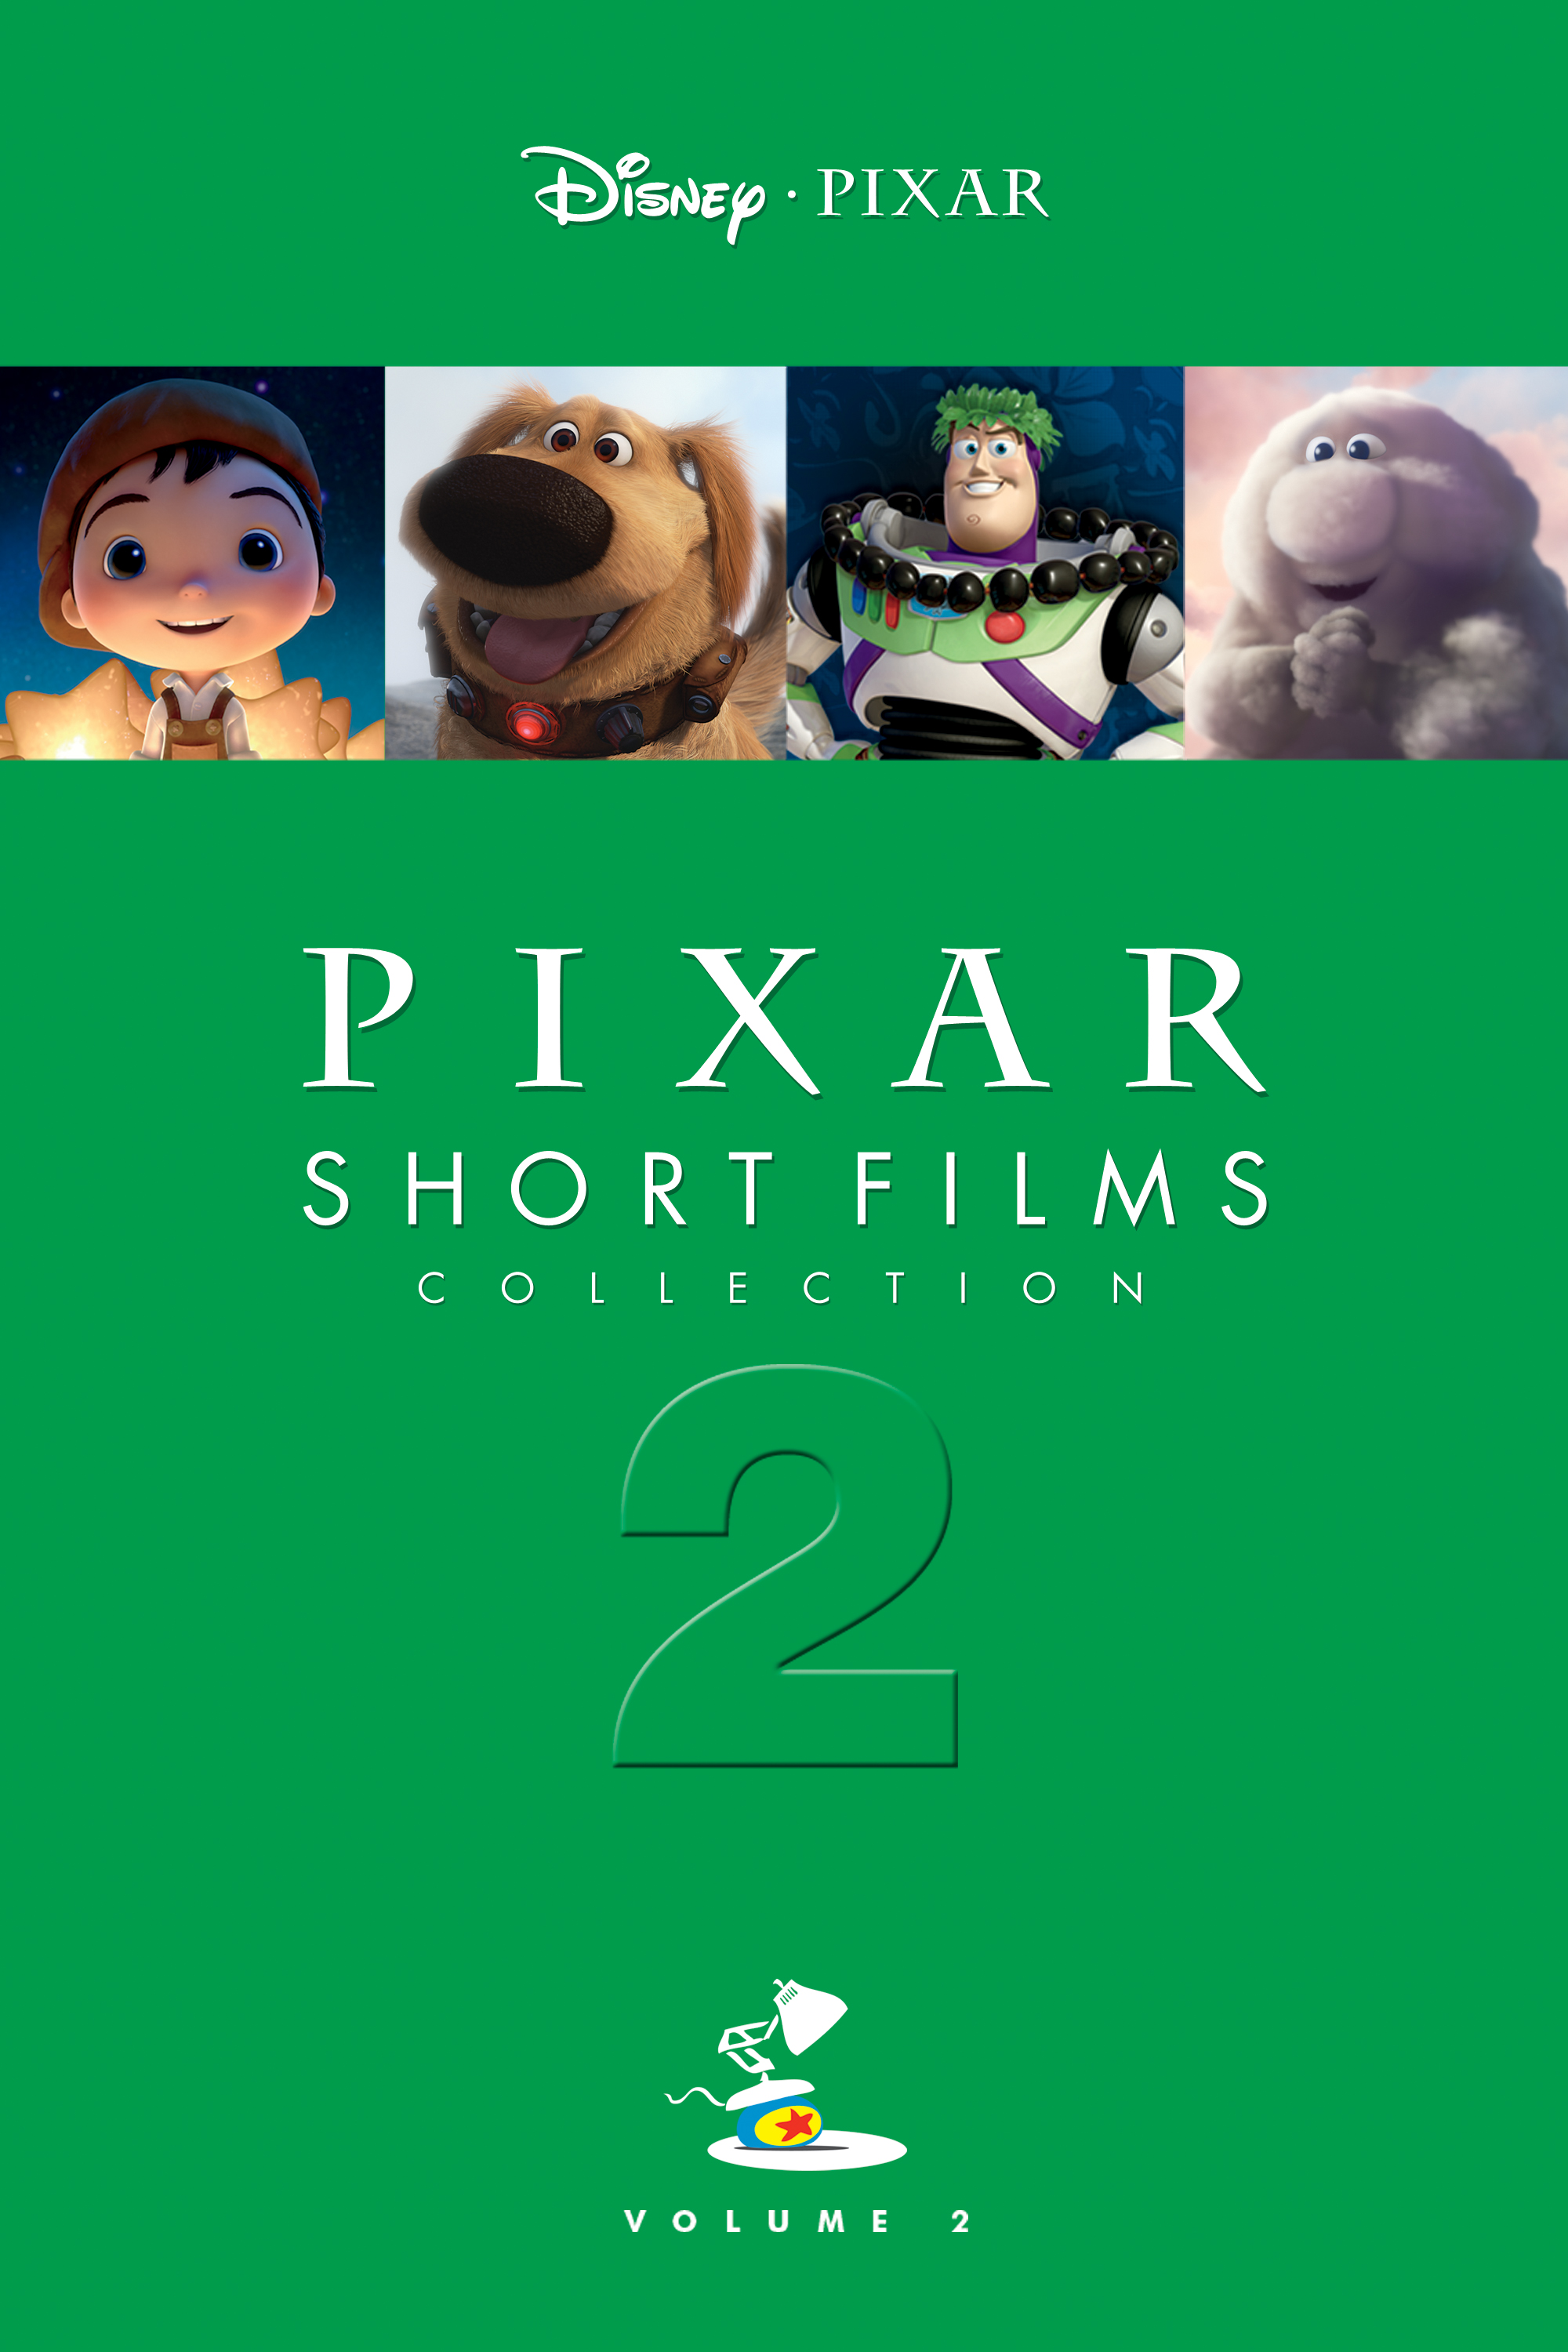 Pixar collection. Коллекция короткометражных мультфильмов Pixar том 2. Коллекция короткометражных мультфильмов Pixar том. Коллекция короткометражных мультфильмов Pixar том 1. Диск Пиксар коллекция короткометражных мультфильмов.